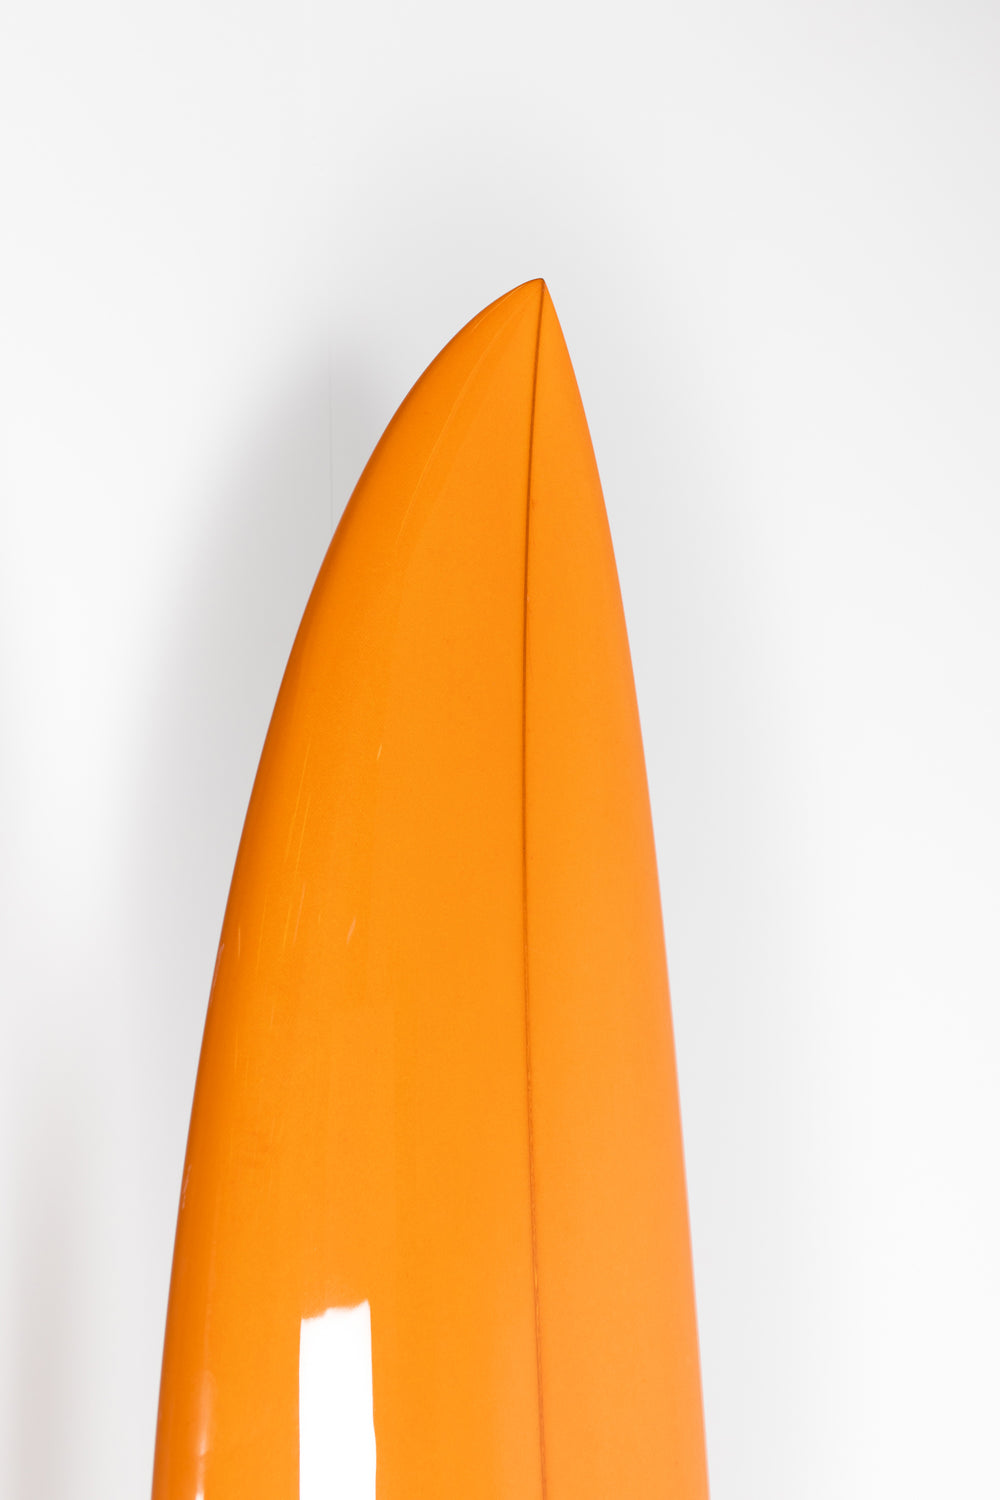 Pukas Surfboard - LADY TWIN 7'2